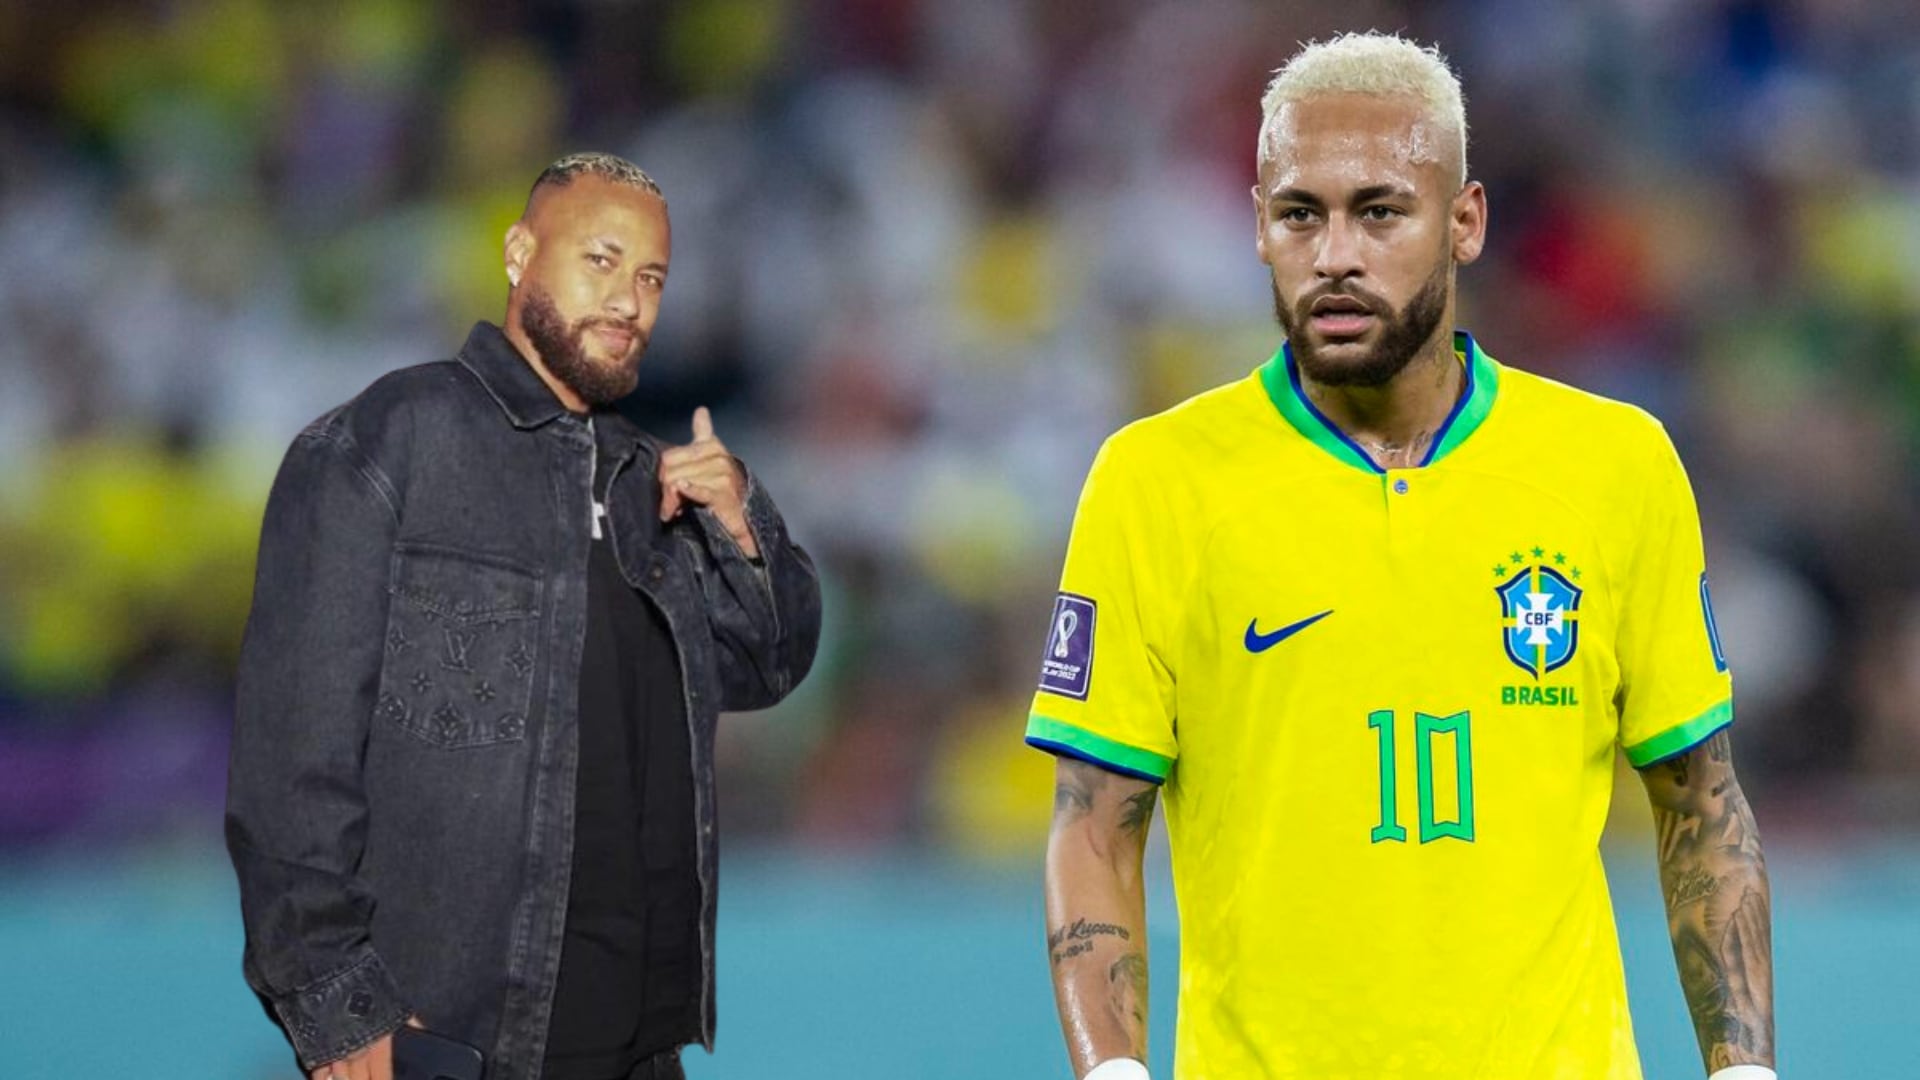 Ni el sobrepeso ni la fiesta, destapan el verdadero problema de Neymar